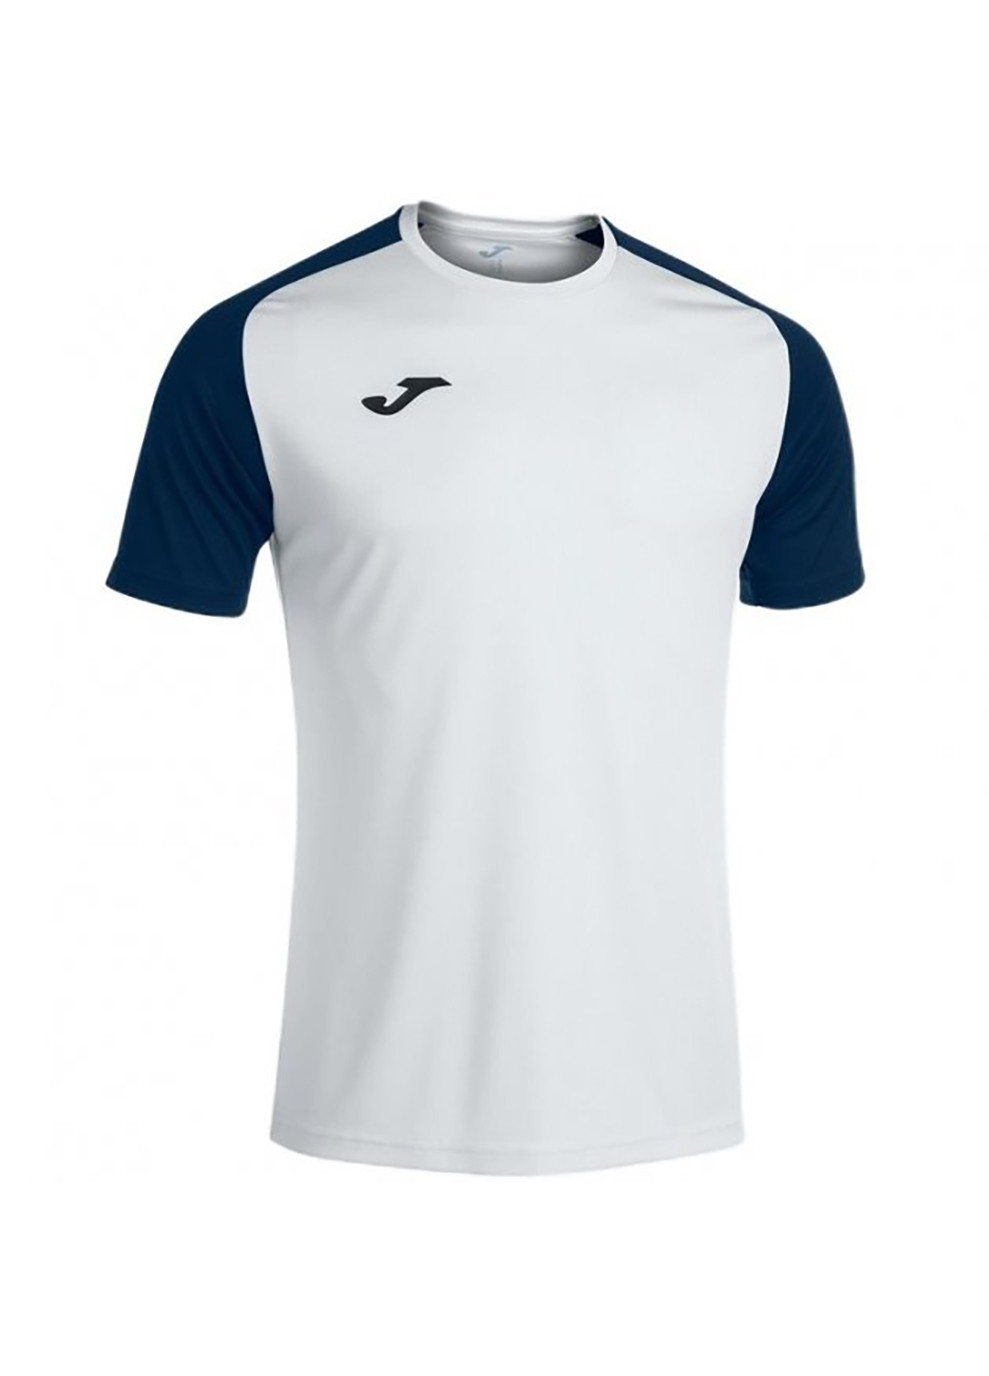 Біла футболка academy iv біло-темно-синій чол Joma